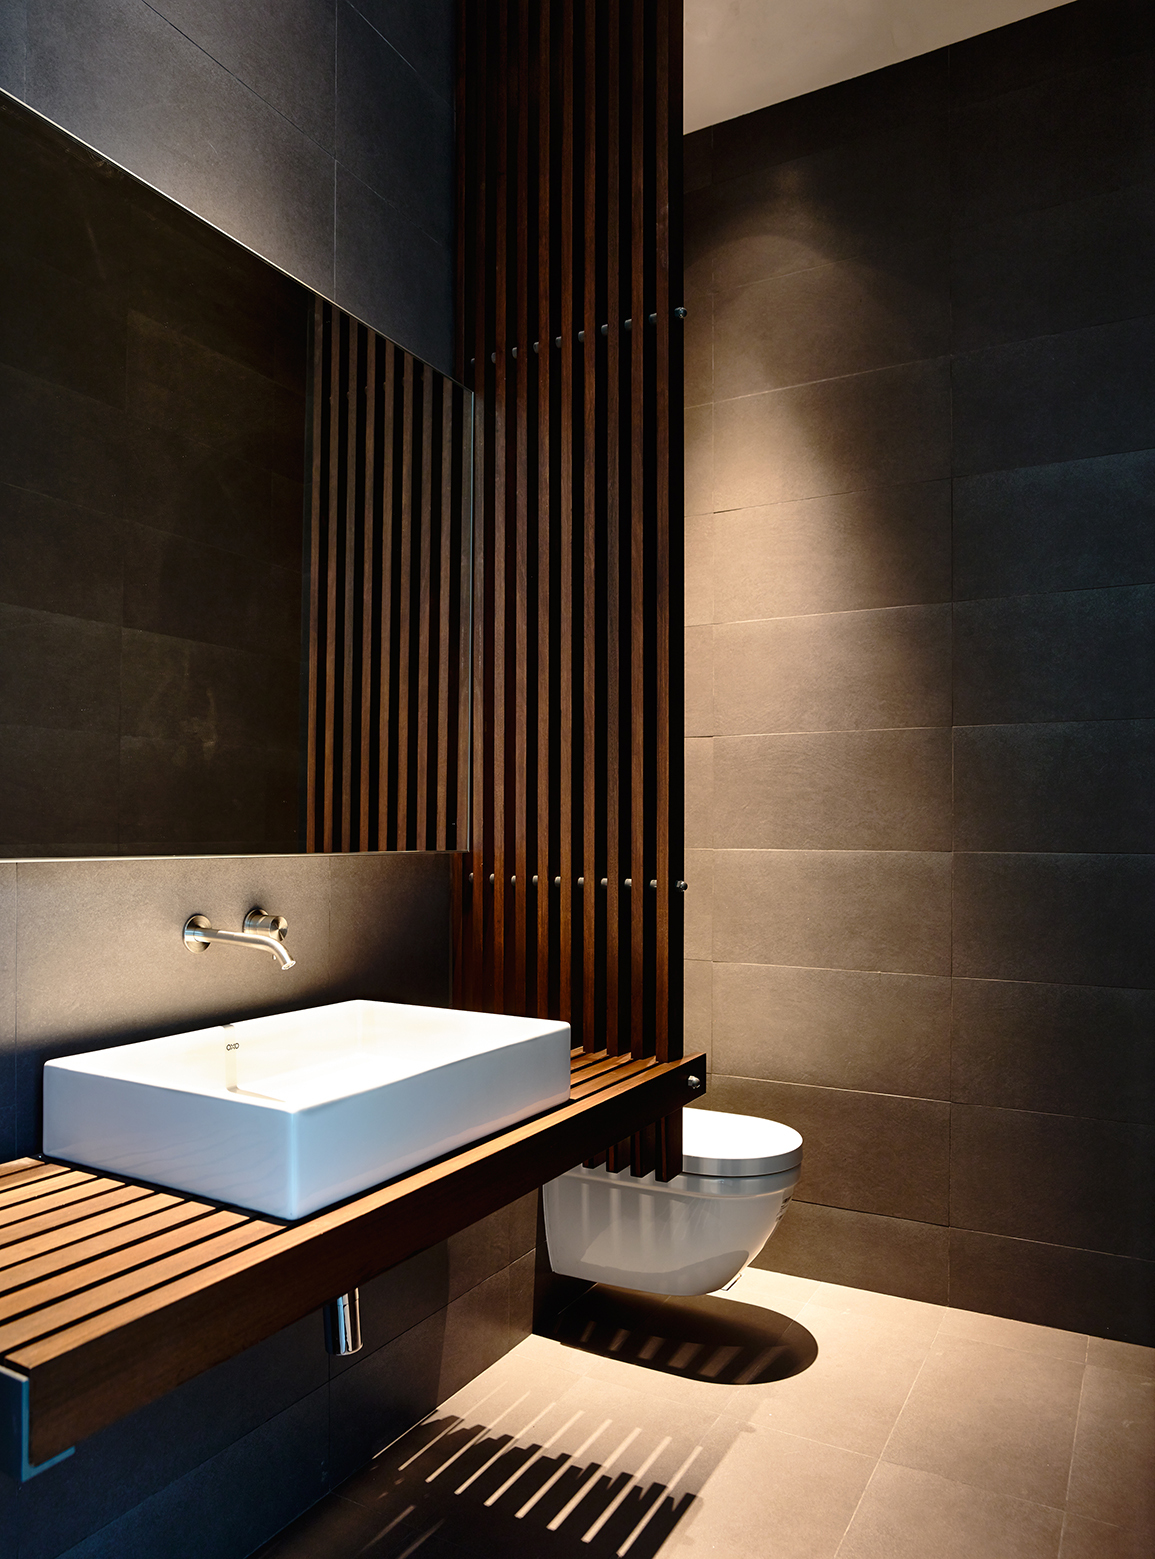 Wedo thiết kế nội thất phòng tắm đẹp, mát mẻ và sang trọng với gỗ tự nhiên